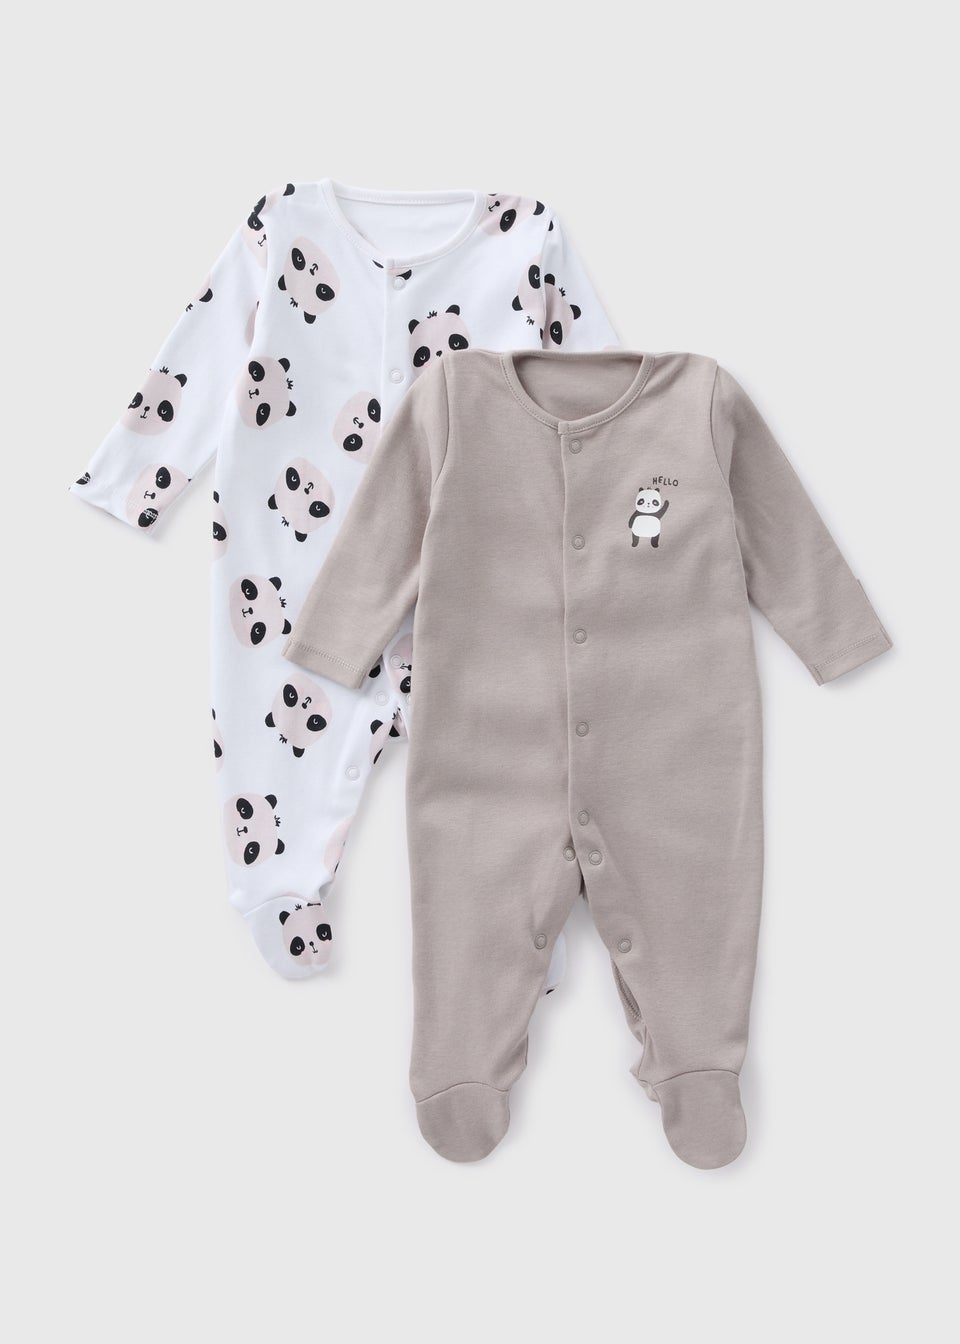 Baby 2 Pack Grey & White Panda Sleepsuits (Newborn-23mths)